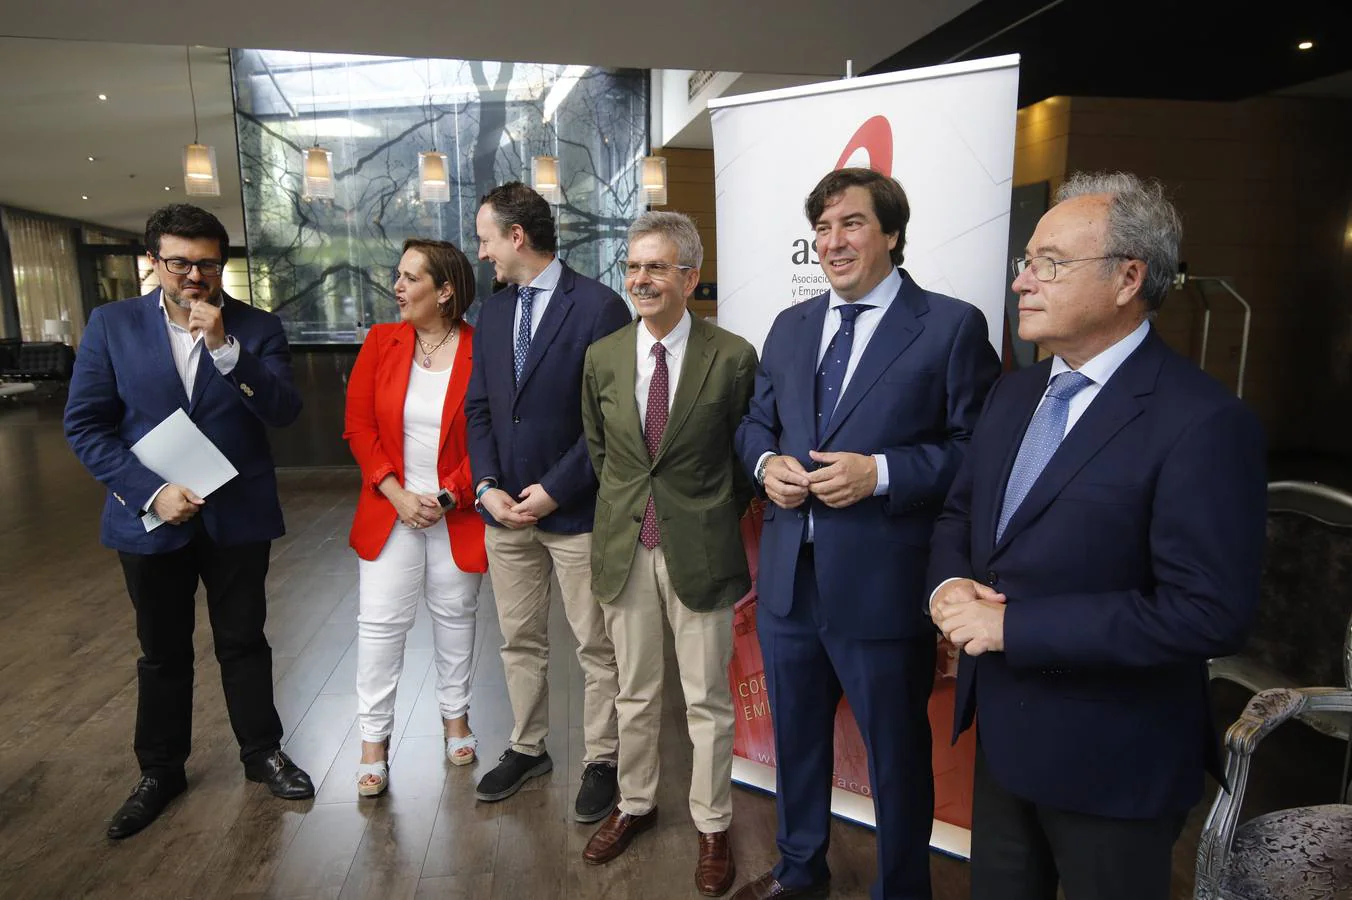 En imágenes, el foro Asfaco con el presidente de Enresa en Córdoba